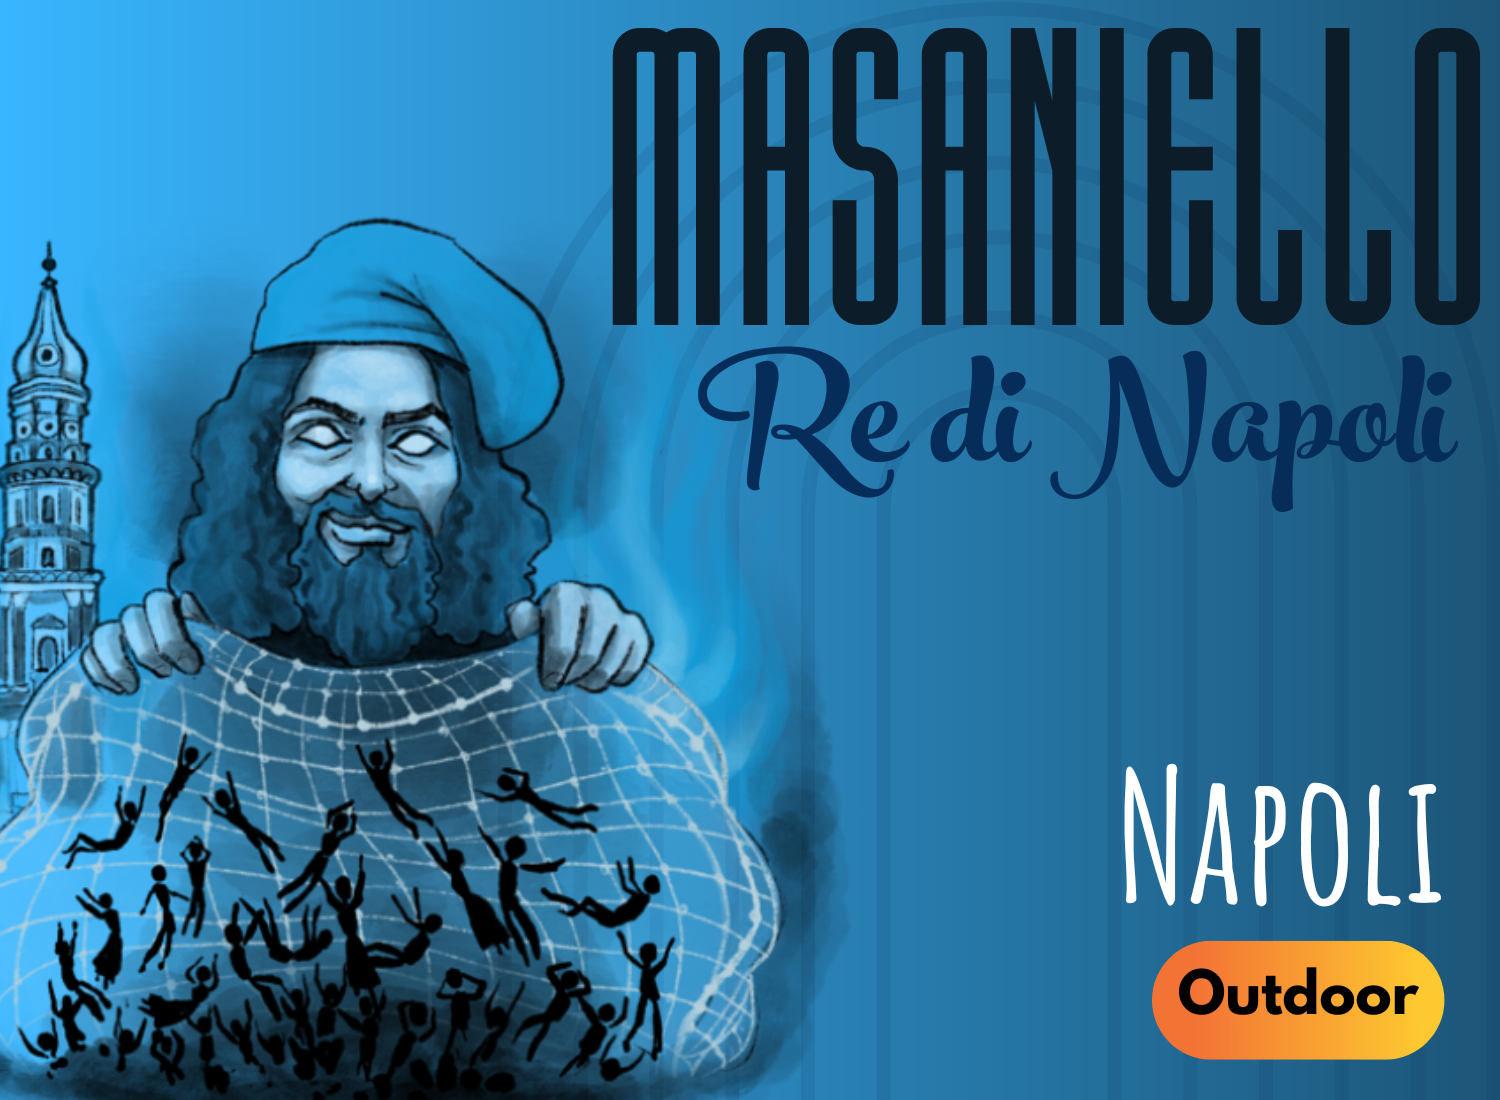 City Escape Napoli - Masaniello